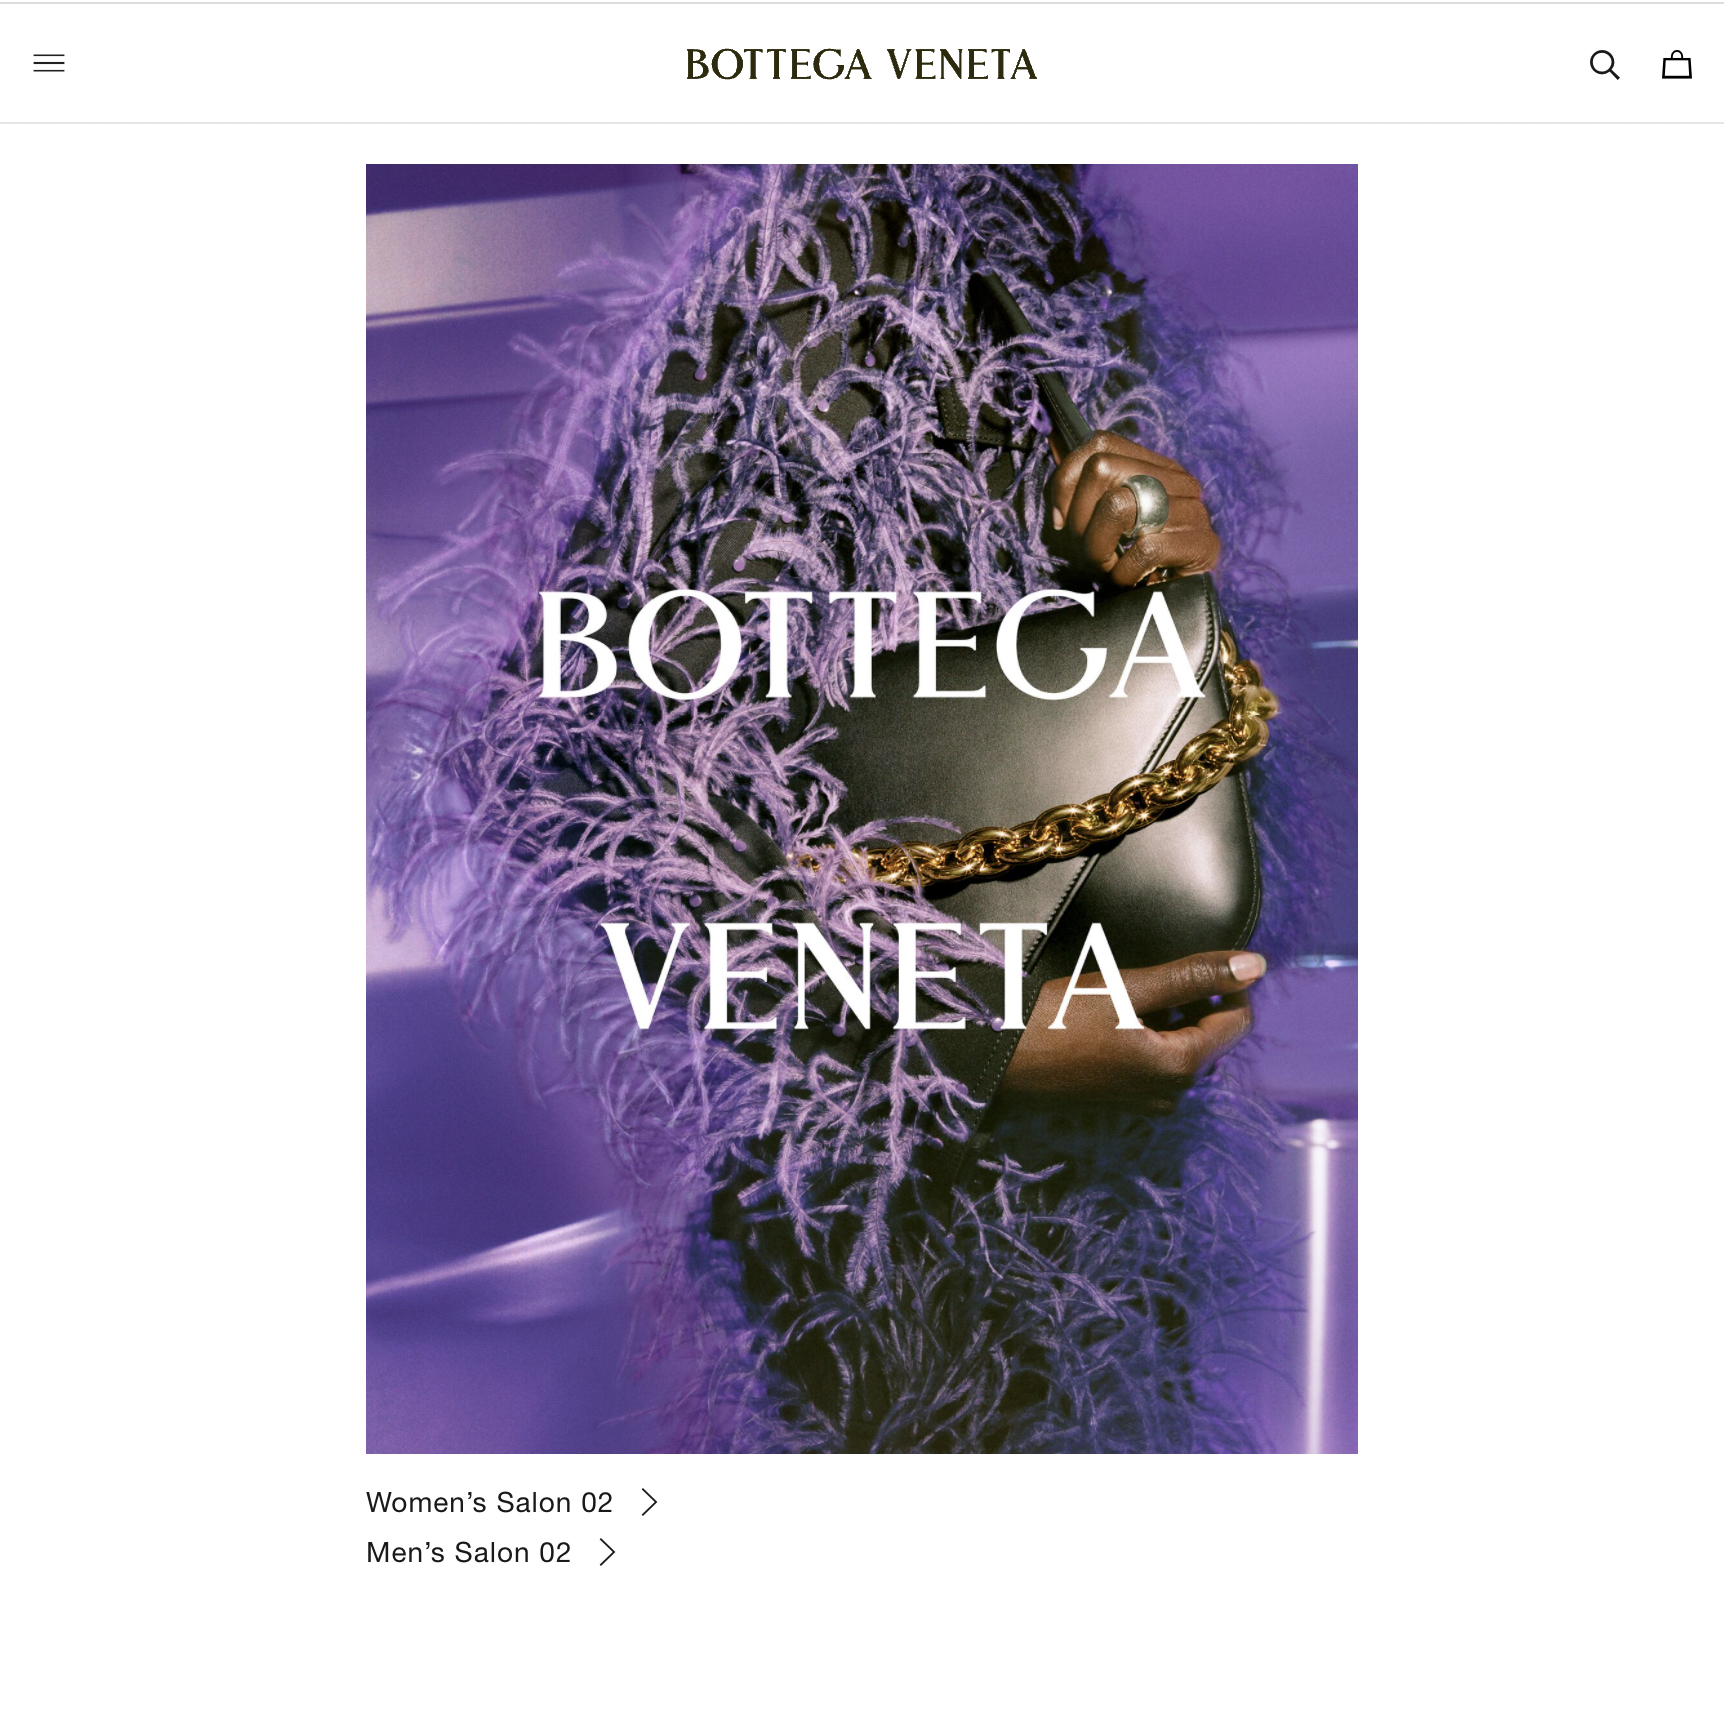 ボッテガ・ヴェネタが新アプリを公開、シグネチャーカラーのパラキート 